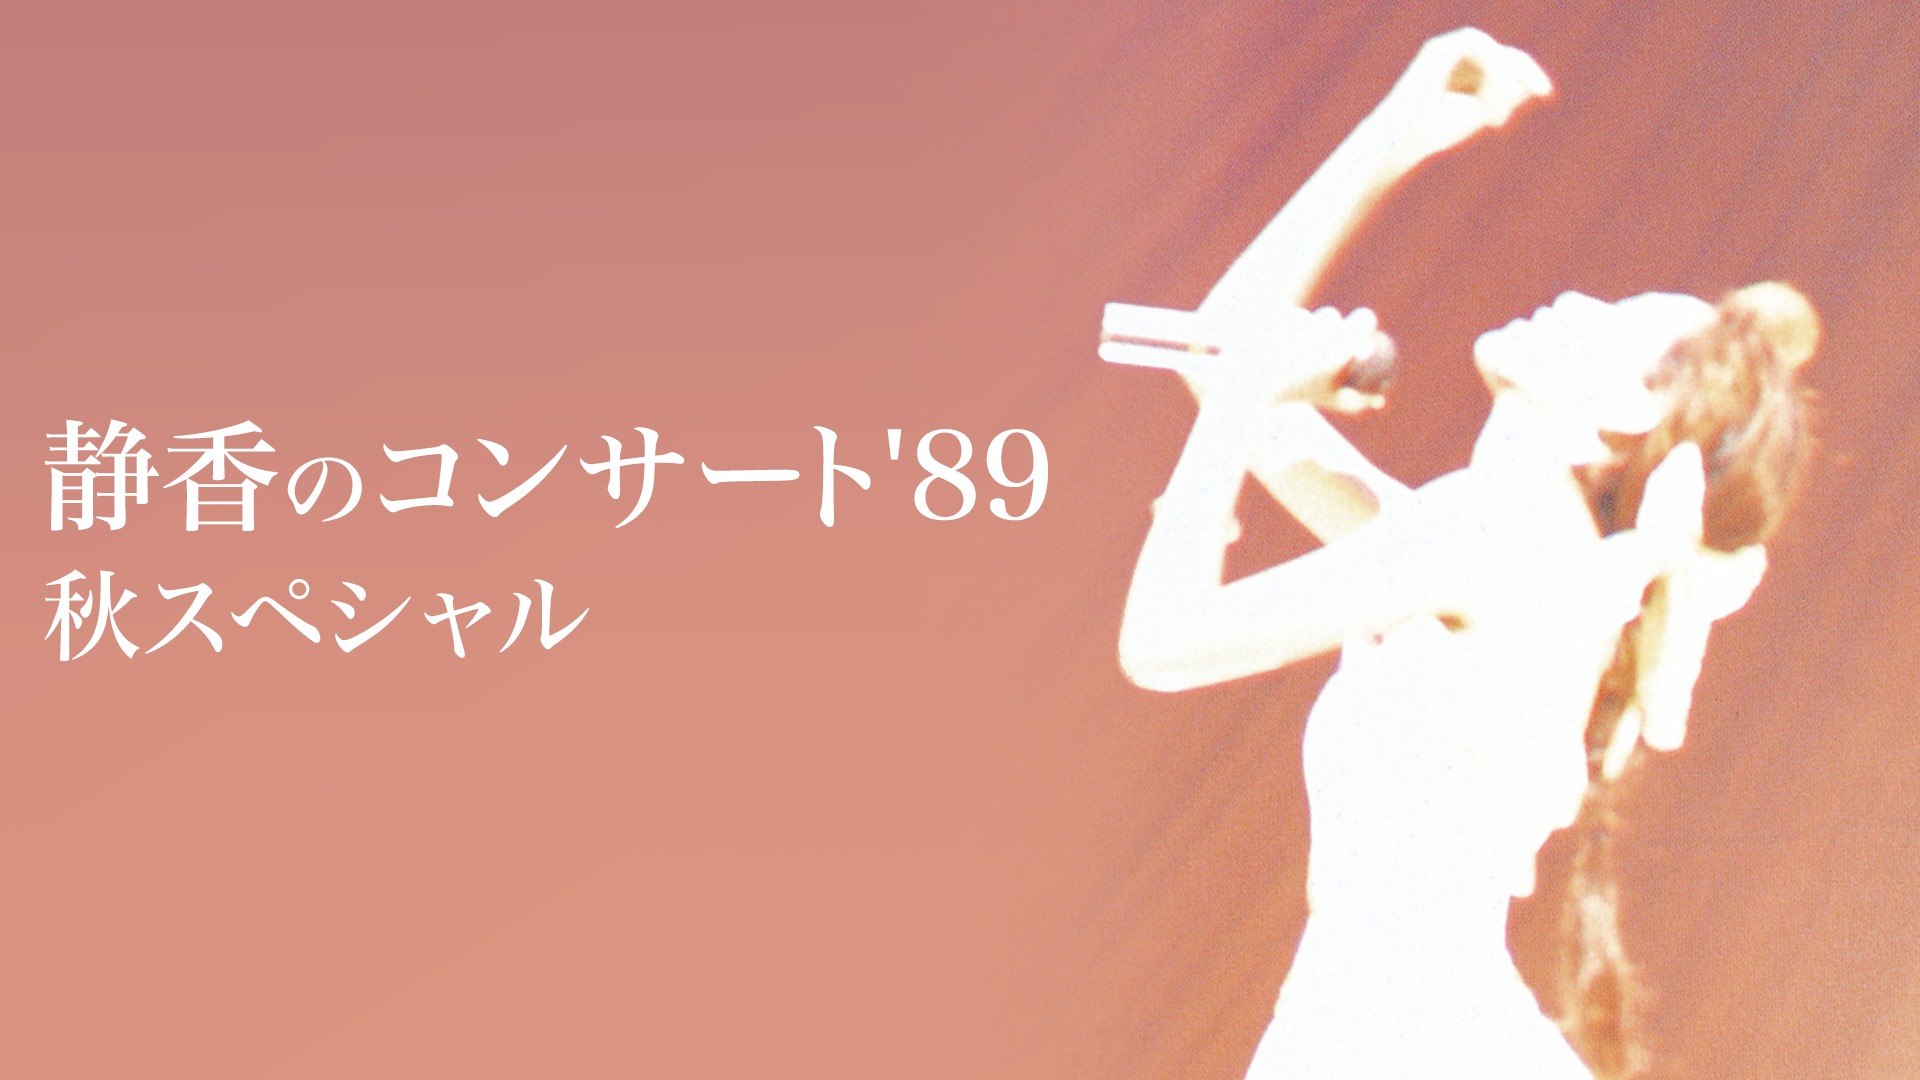 工藤静香 Full of Love Concert Tour 1999(音楽・ライブ / 1999) - 動画配信 | U-NEXT  31日間無料トライアル